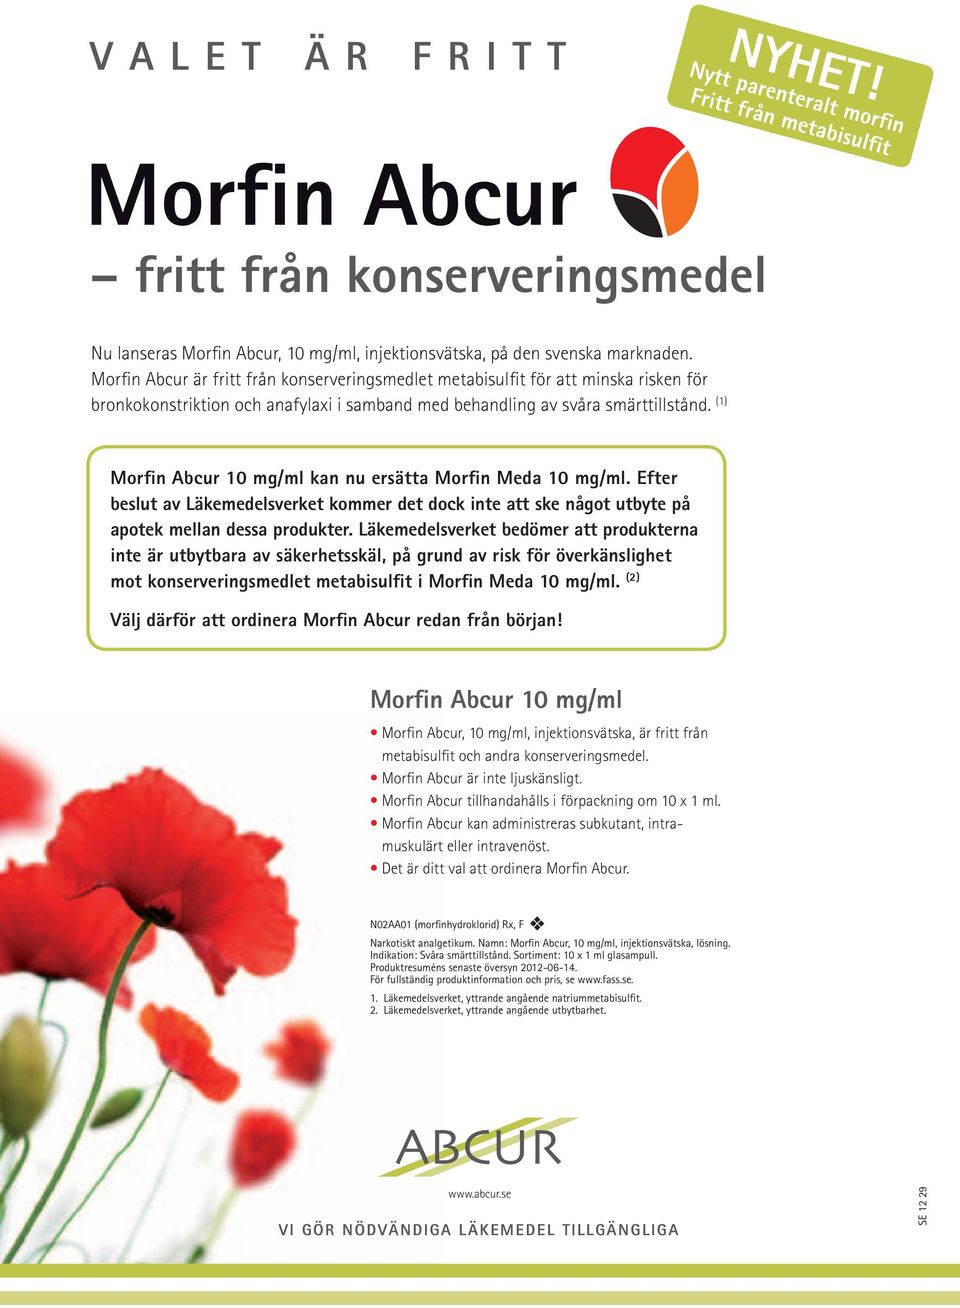 (1) morfin Abcur 10 mg/ml kan nu ersätta morfin meda 10 mg/ml. Efter beslut av Läkemedelsverket kommer det dock inte att ske något utbyte på apotek mellan dessa produkter.